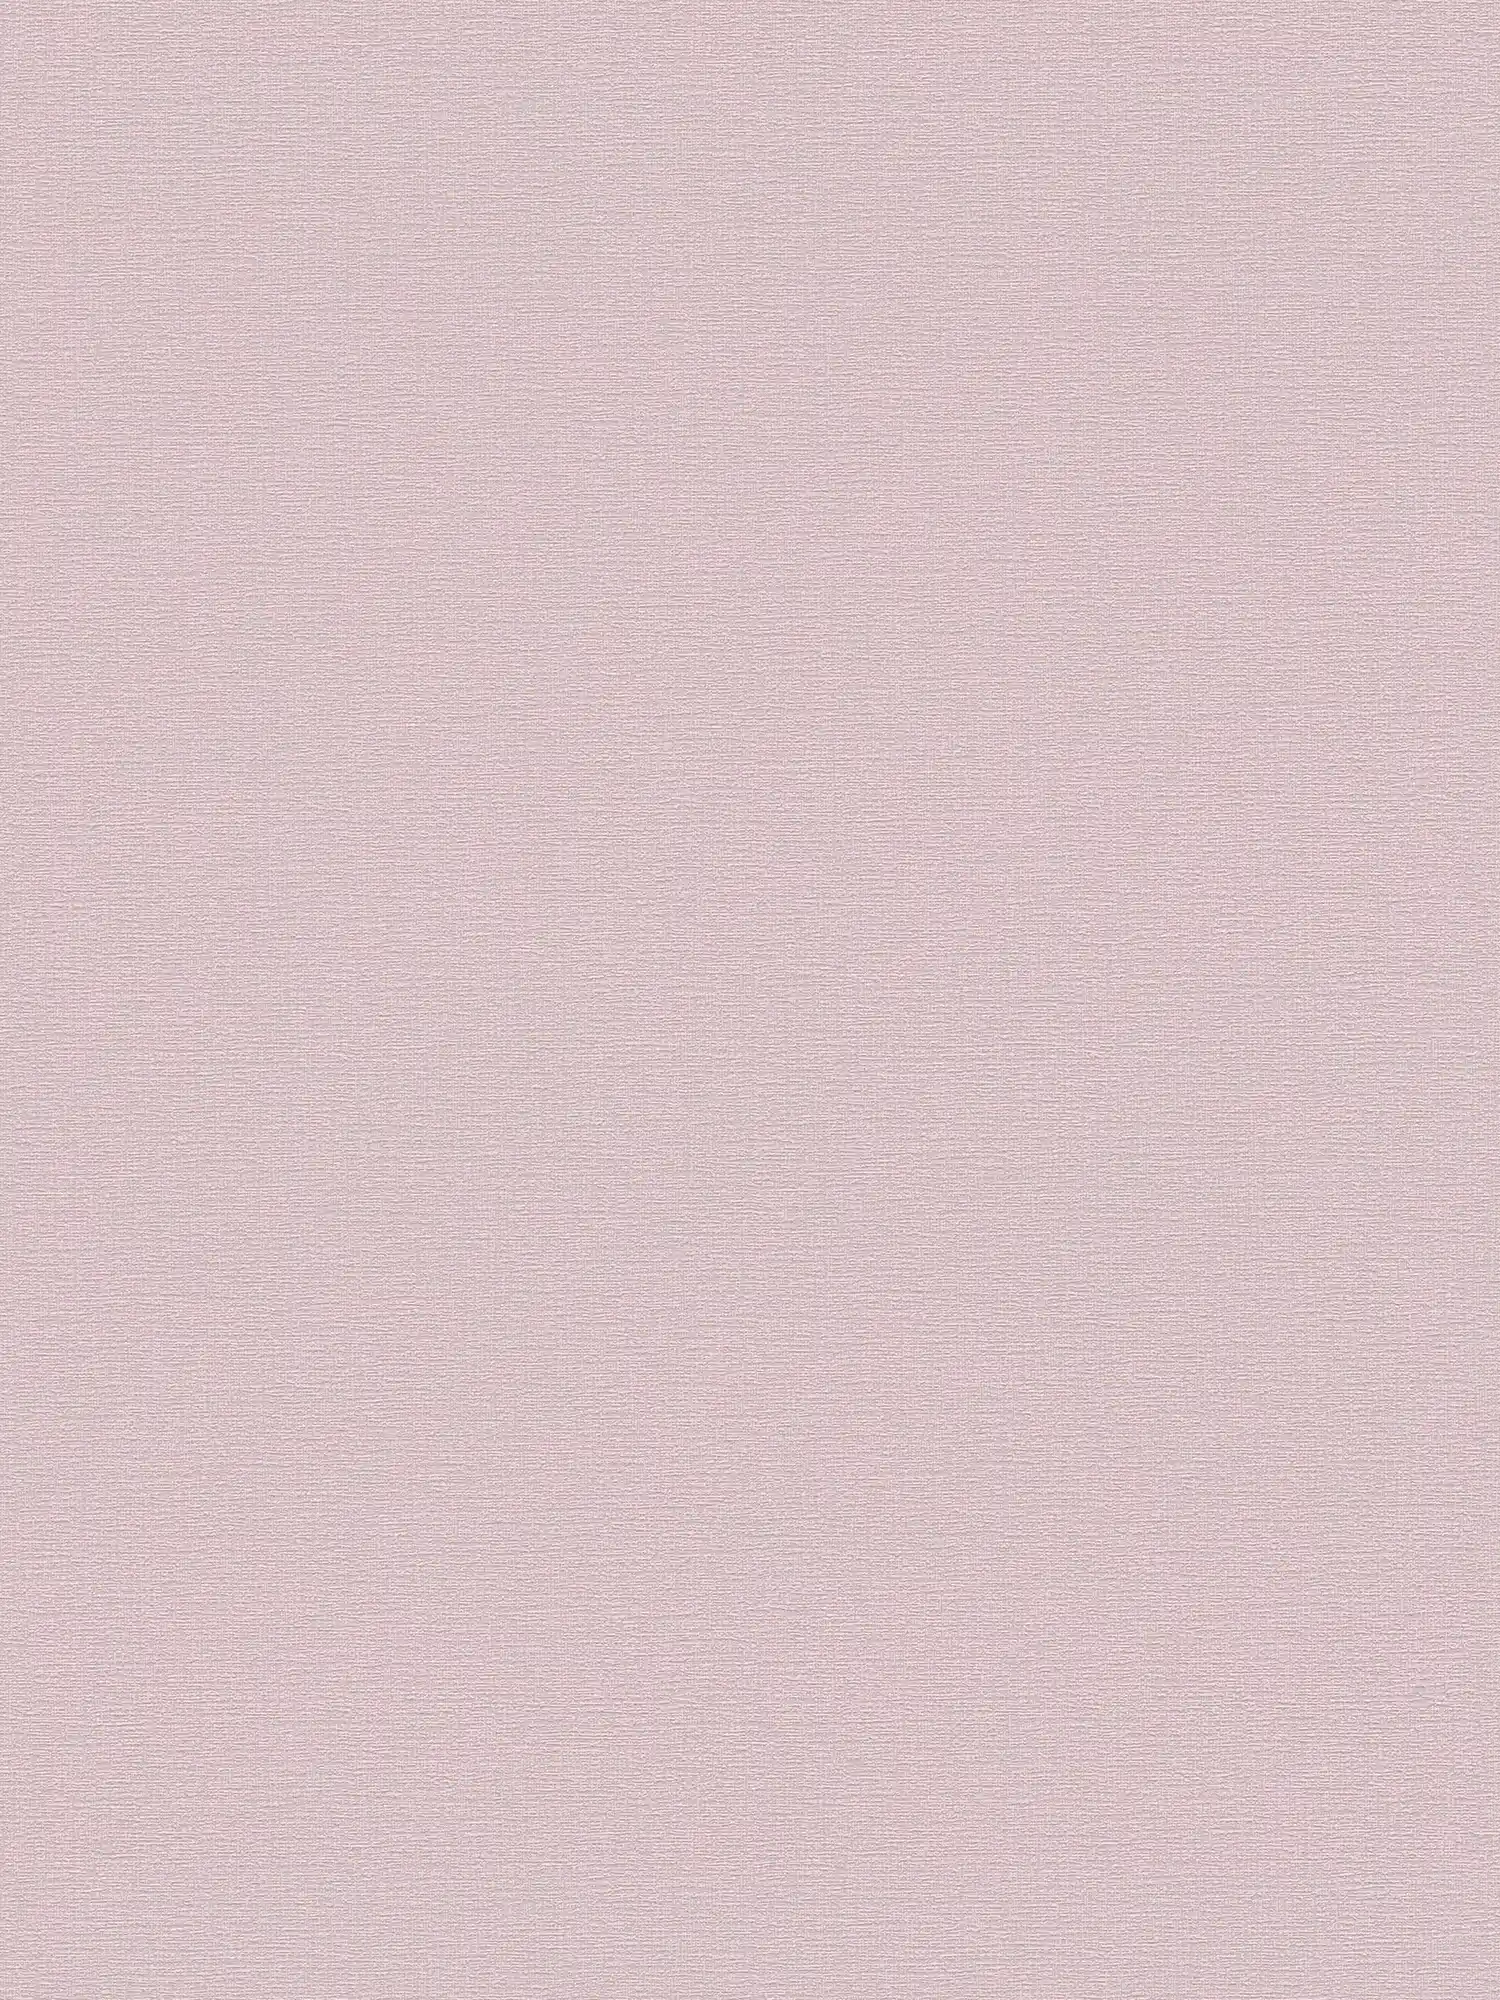 papier peint en papier uni à texture légère - rose, vieux rose
